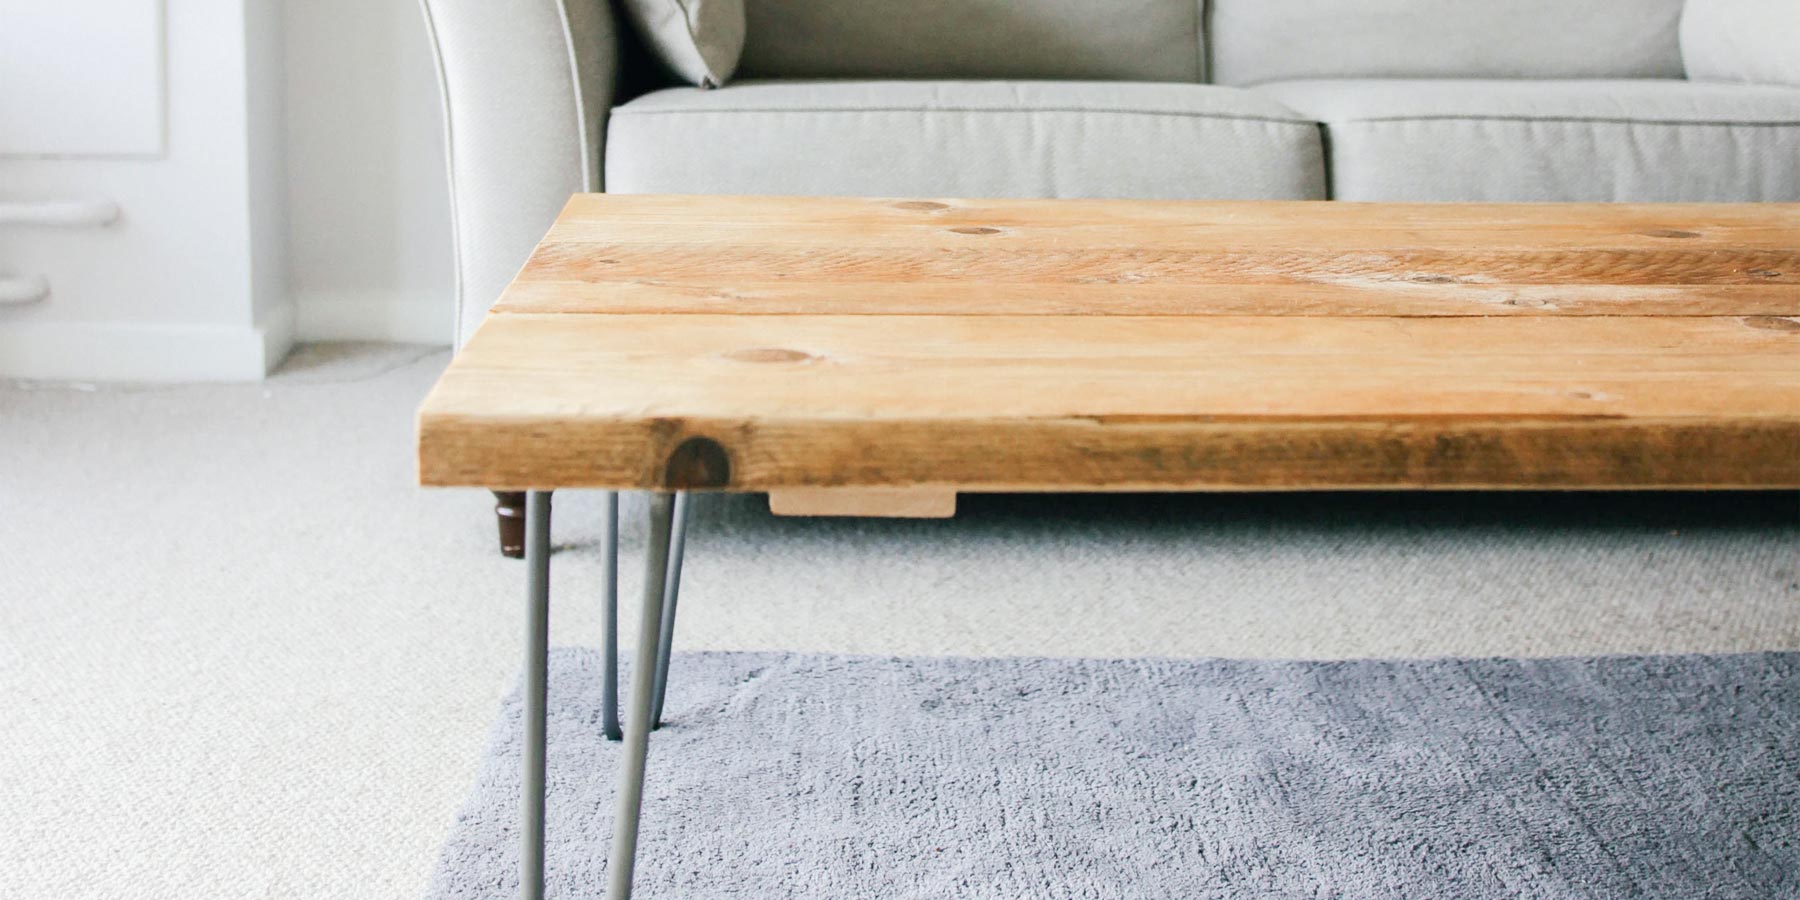 Farmhouse decor ideas: reclaimed wood coffee table